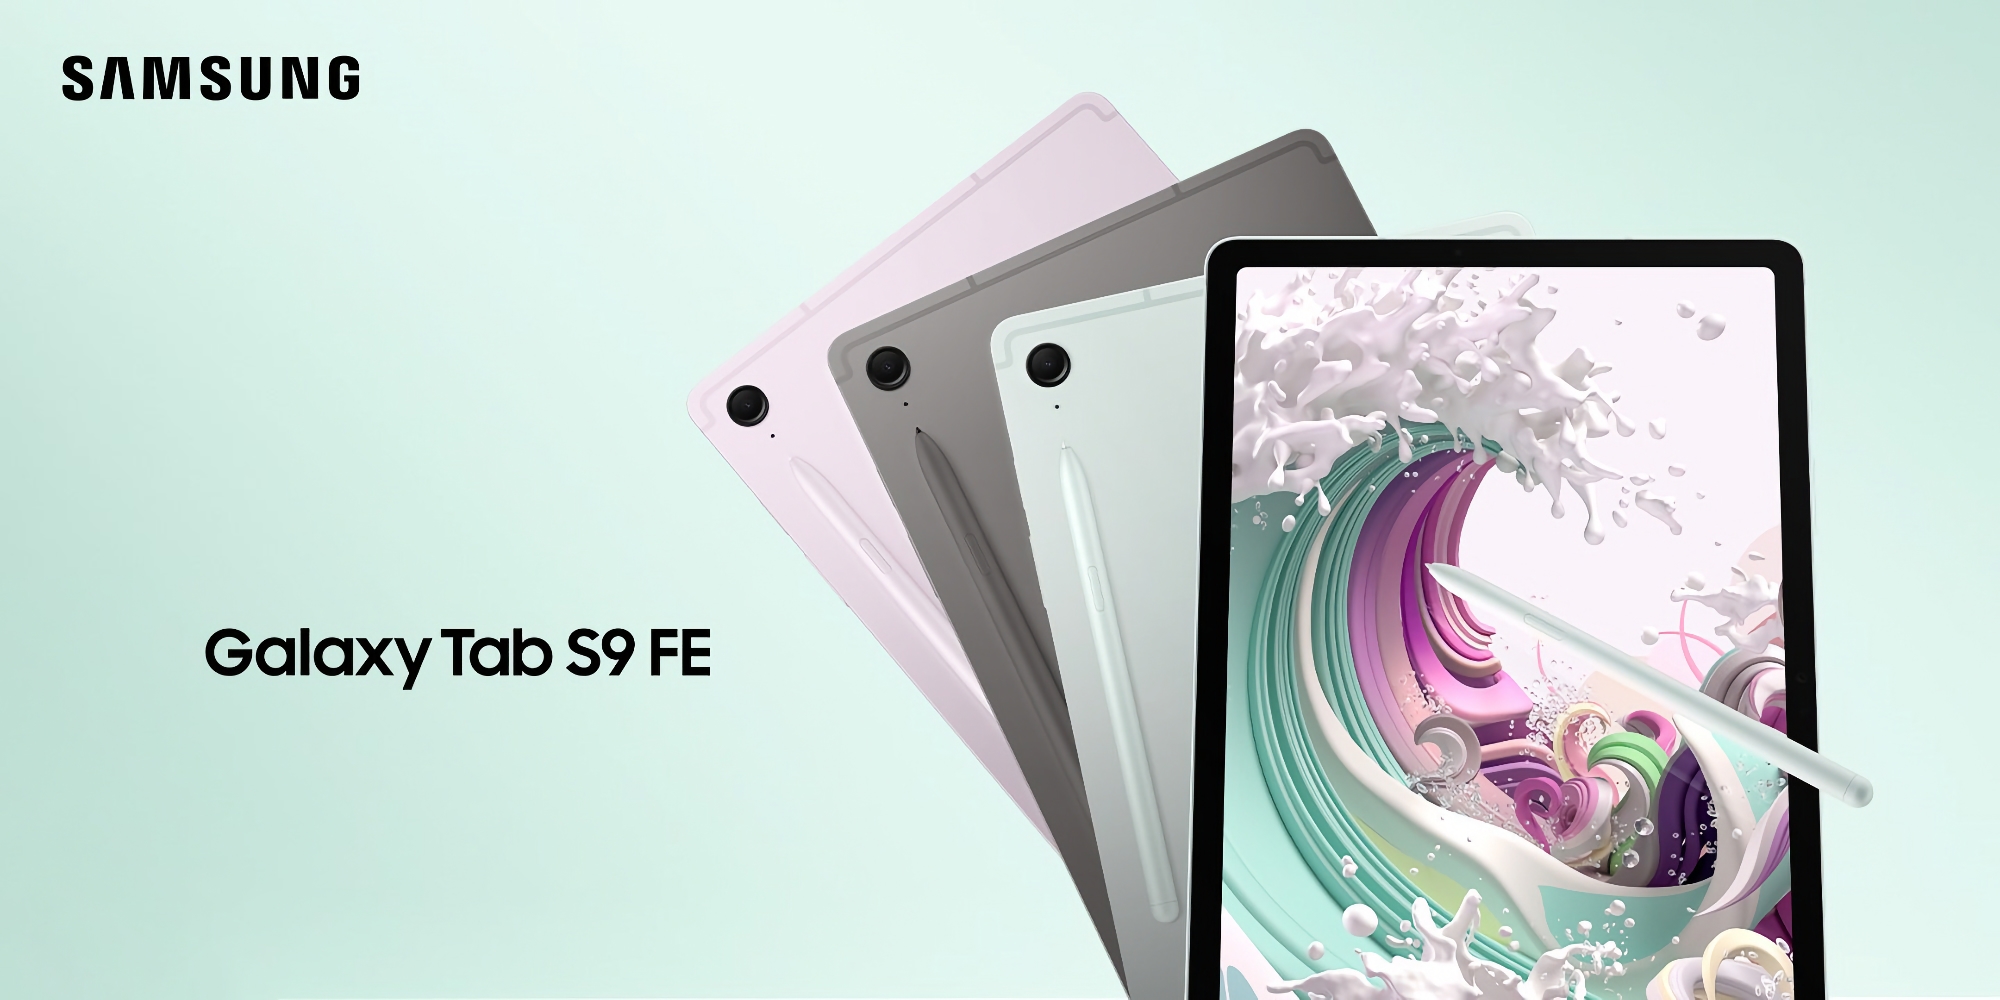 Réduction de 79 $ : Samsung Galaxy Tab S9 FE est disponible sur Amazon à un prix promotionnel.